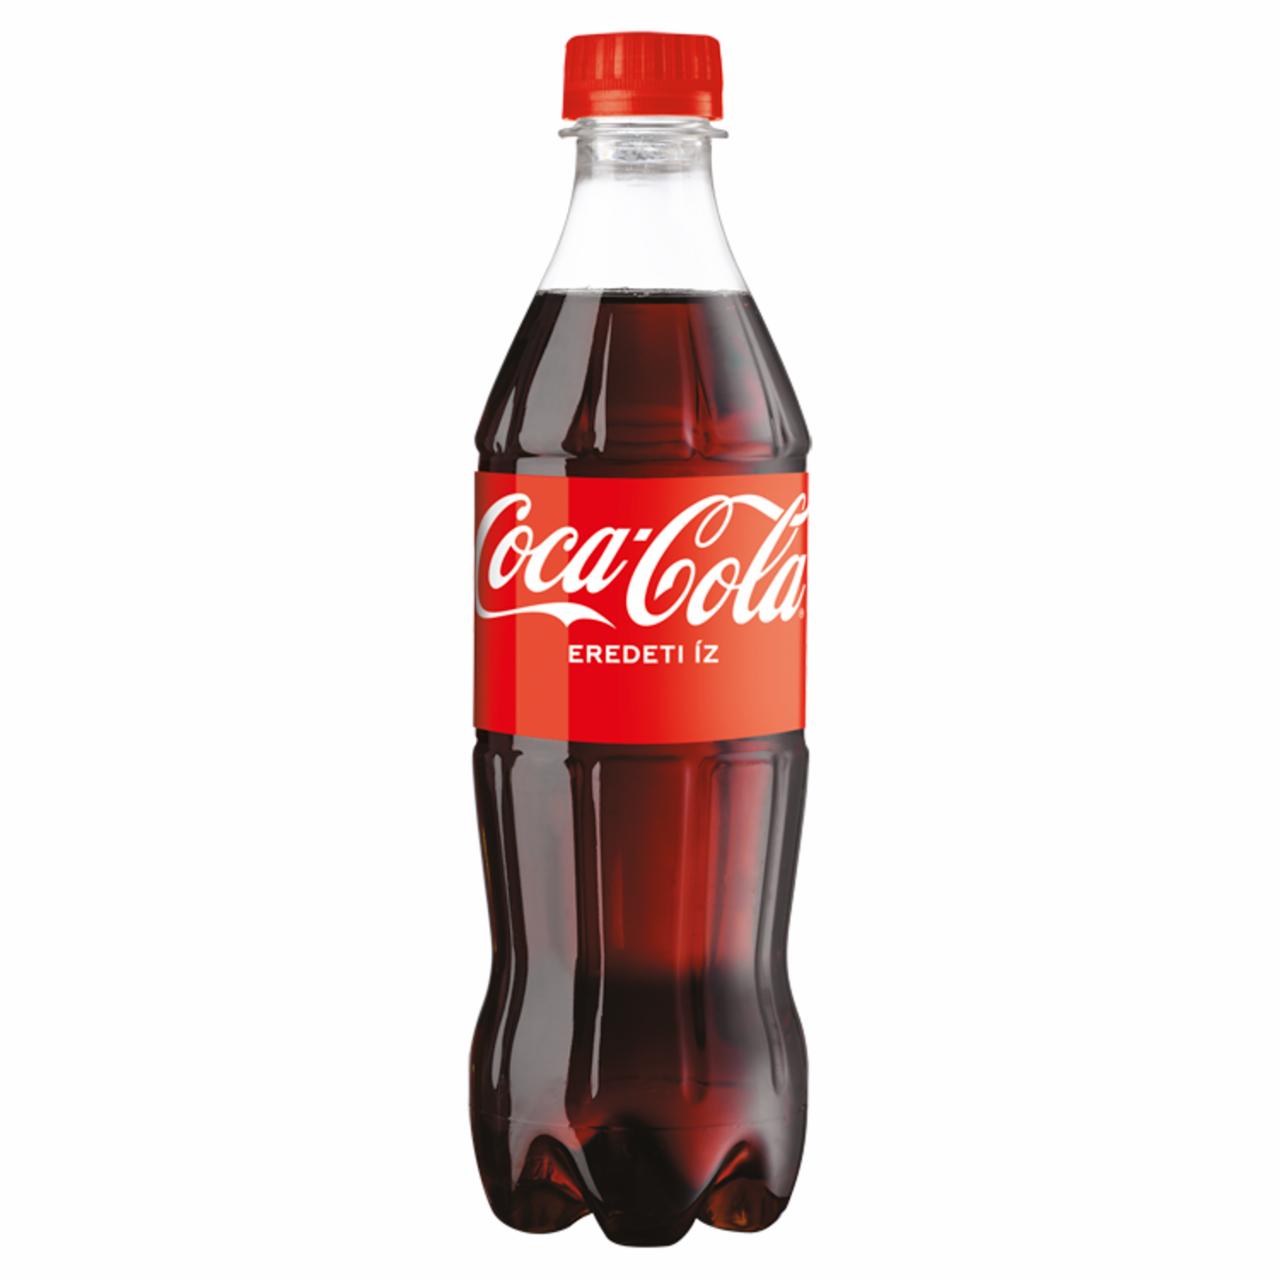 Képek - Coca-Cola